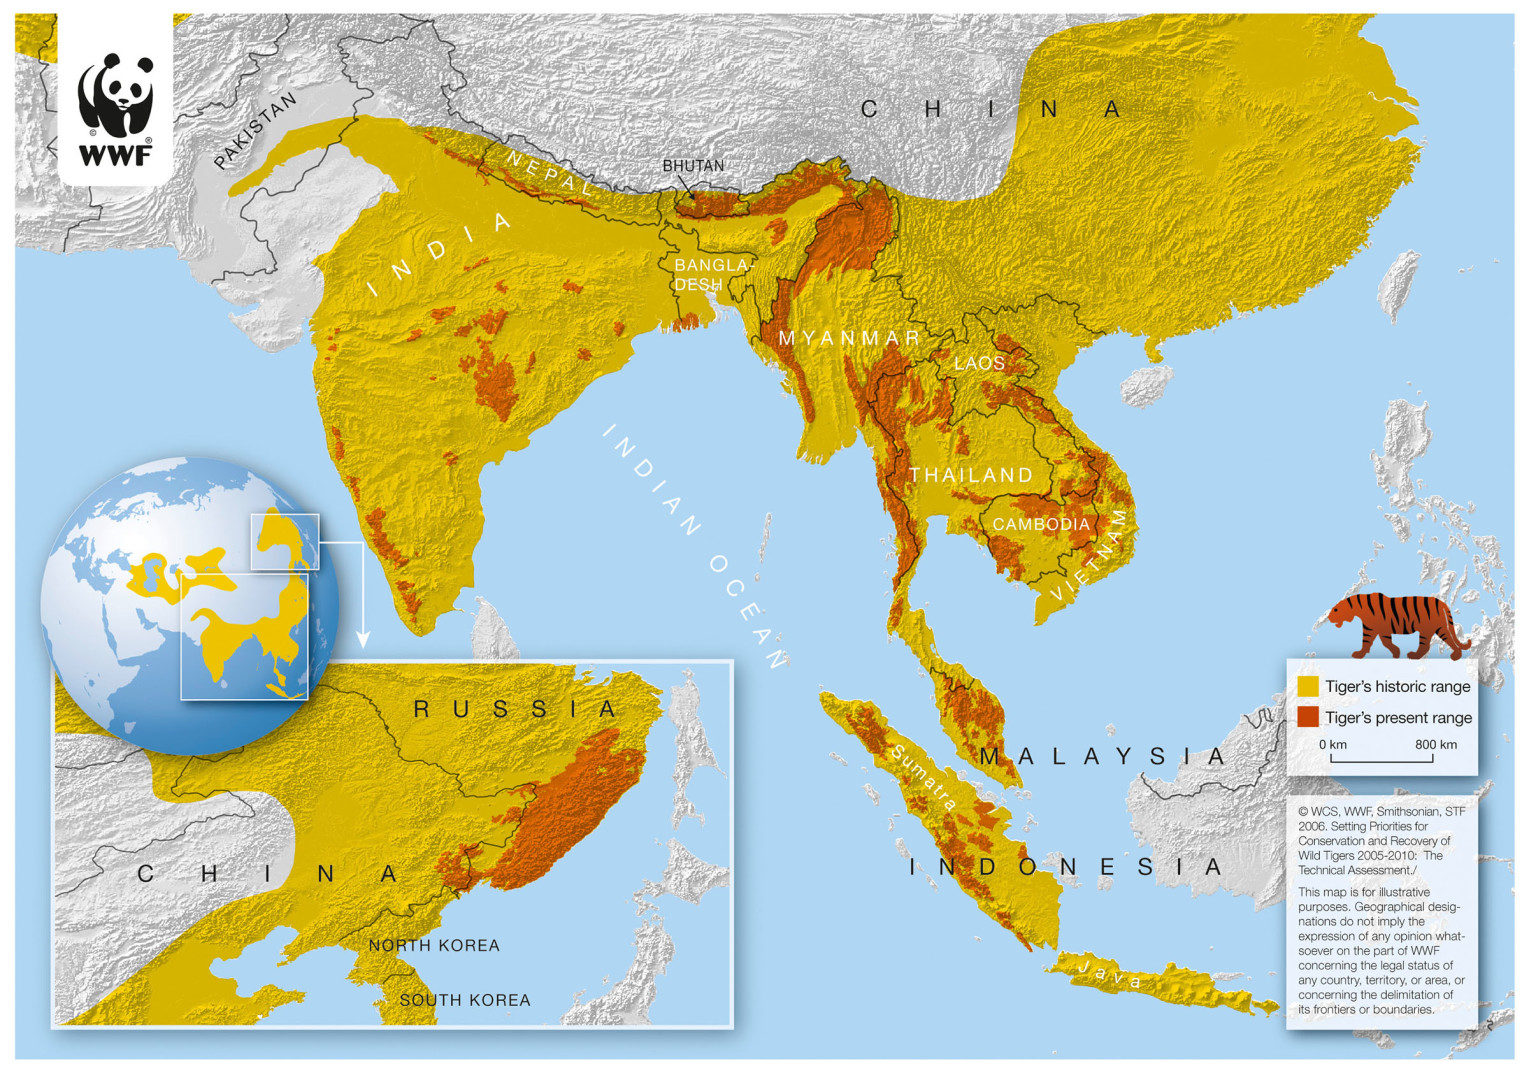 Historical map of main tiger habitats